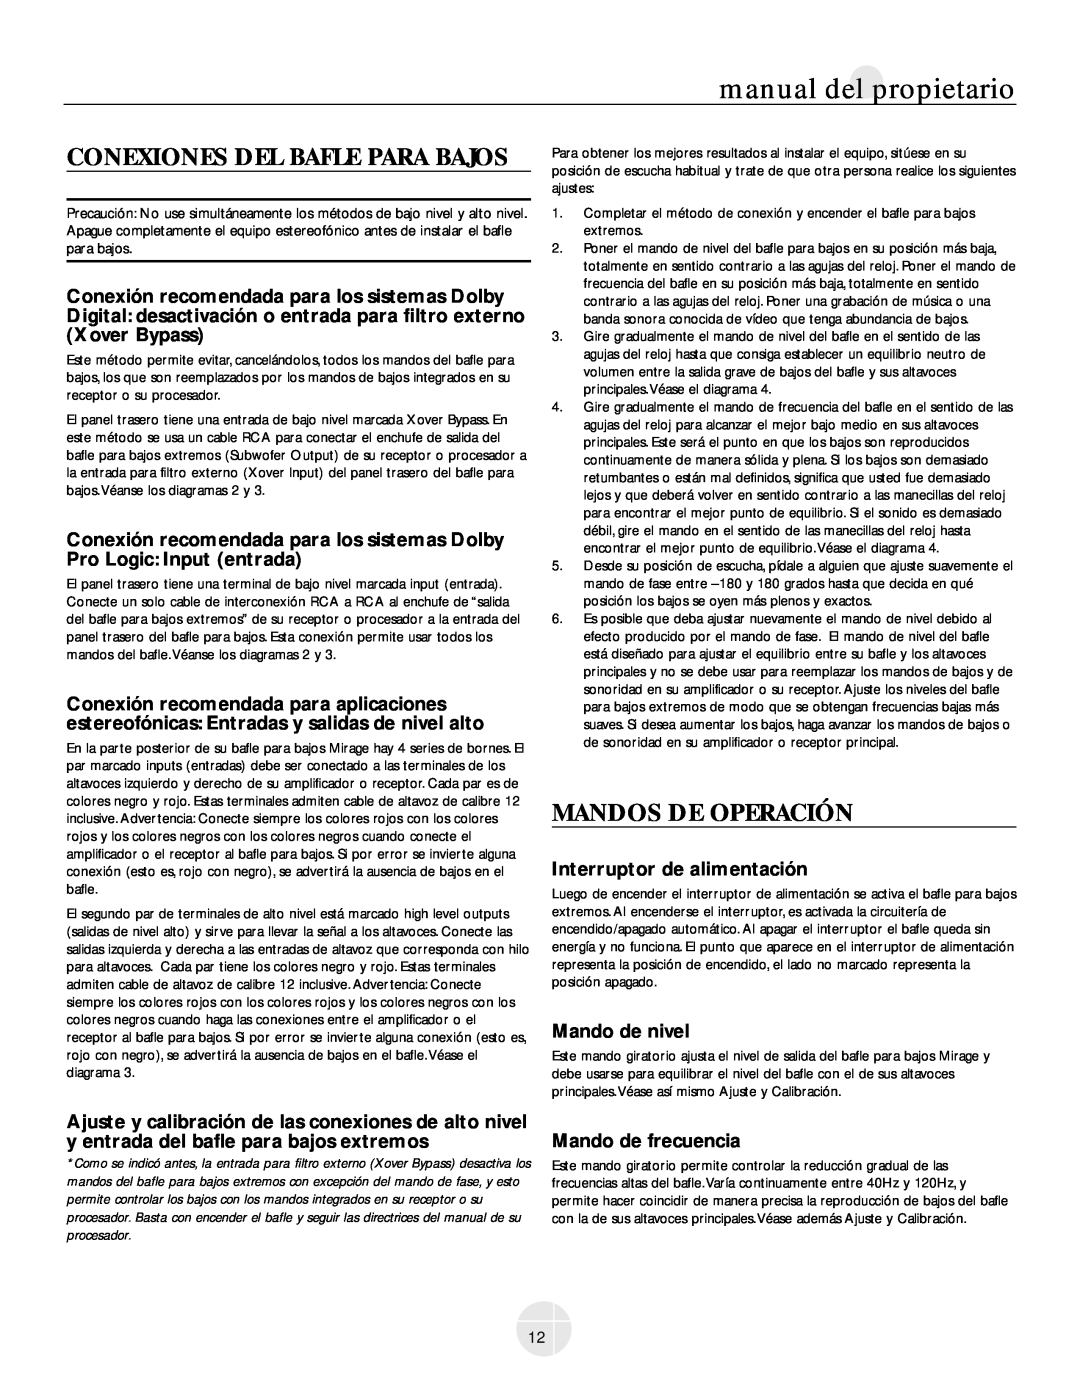 Mirage Loudspeakers OM-200 owner manual Conexiones Del Bafle Para Bajos, Mandos De Operación, Interruptor de alimentación 